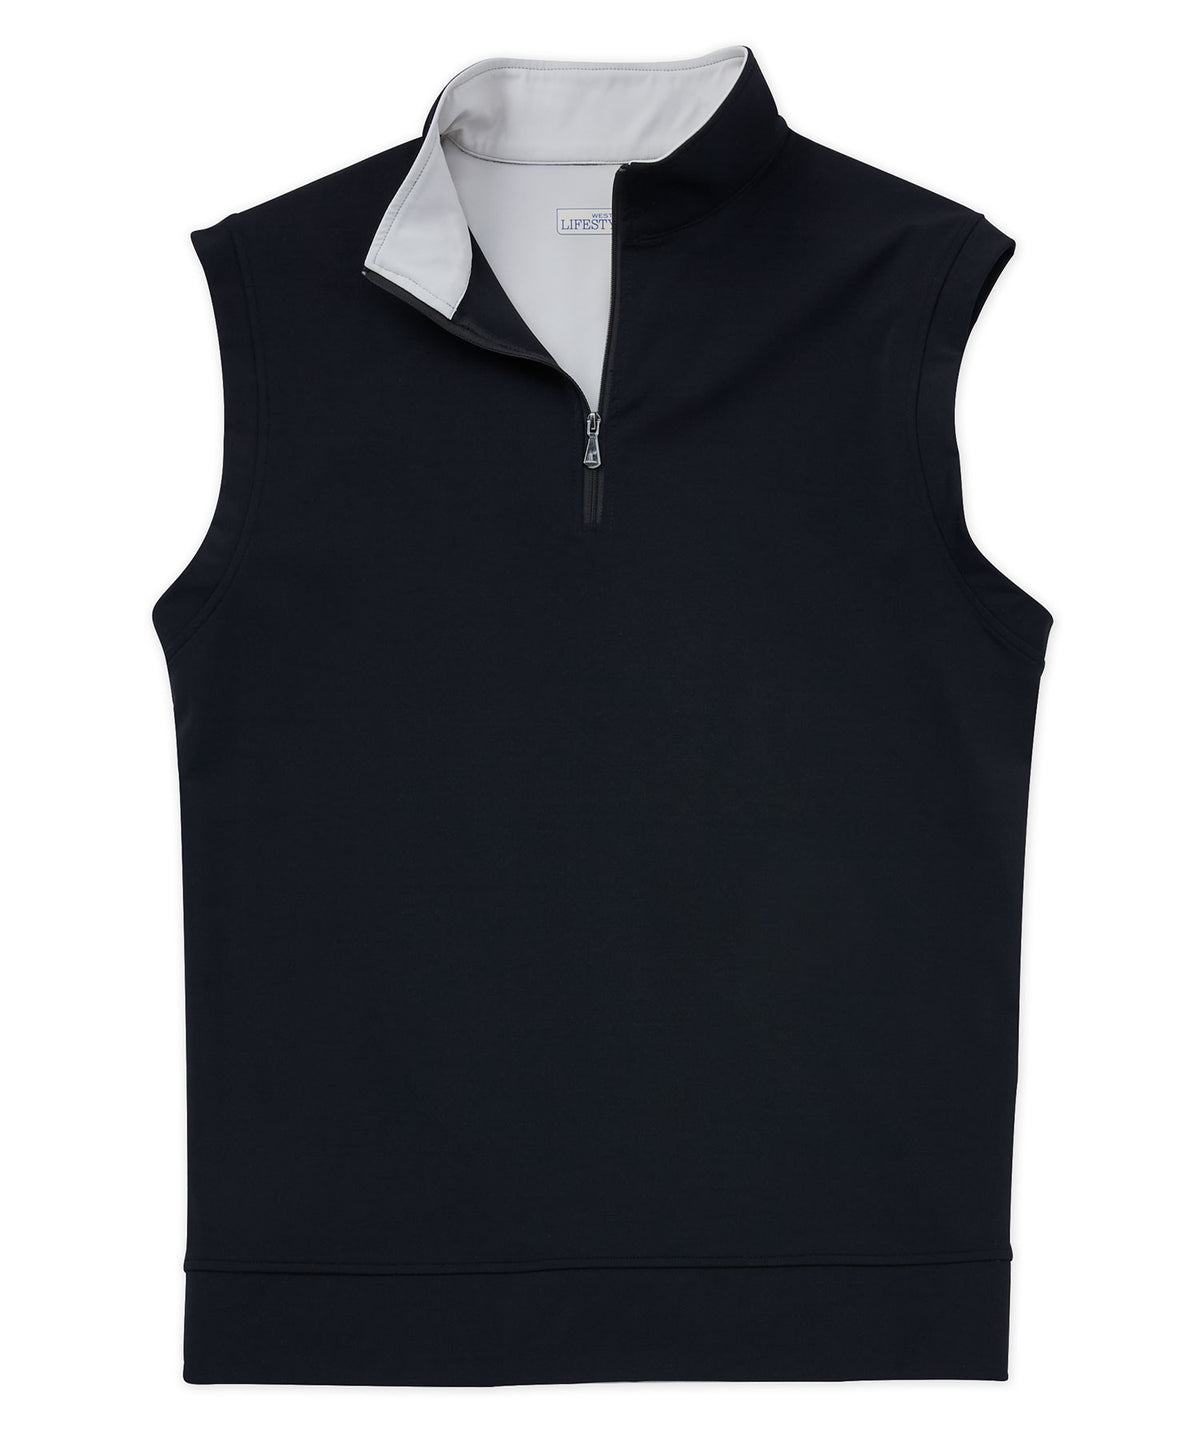 Westport Lifestyle Links Quarter-Zip Vest, Men's Big & Tall